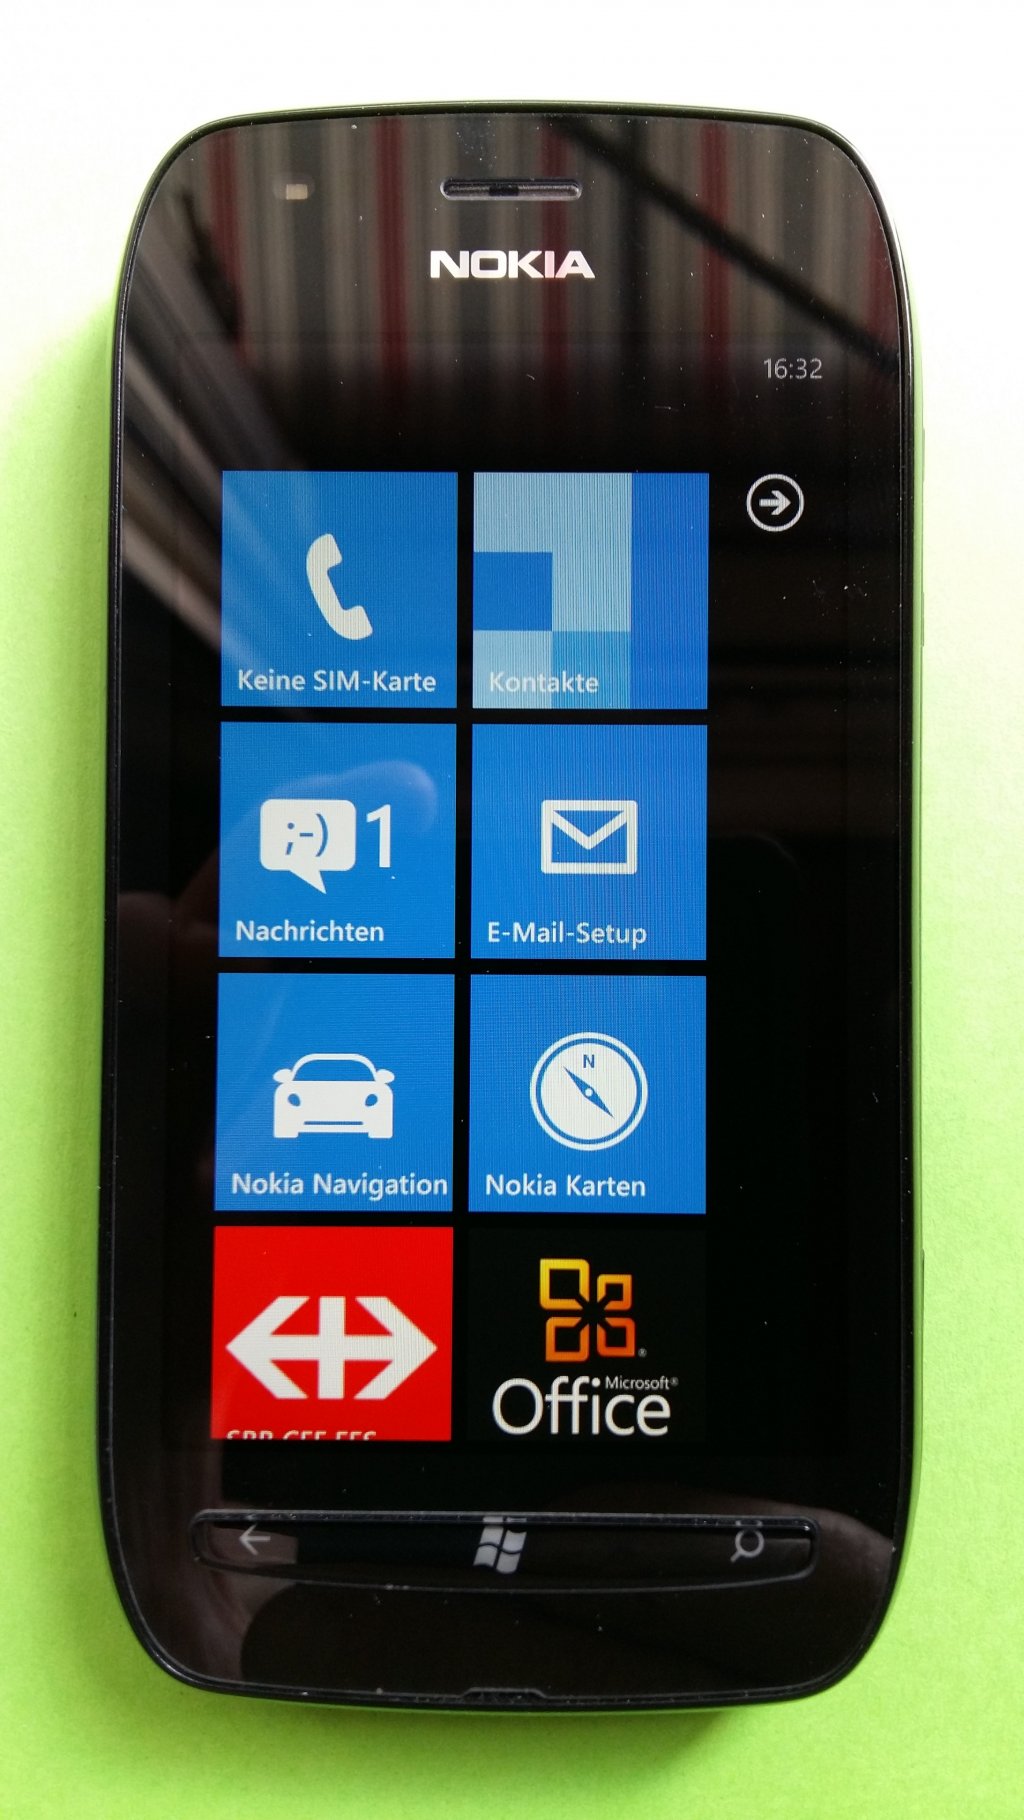 image-7485824-Nokia_710_Lumia_(1)1.w640.jpg